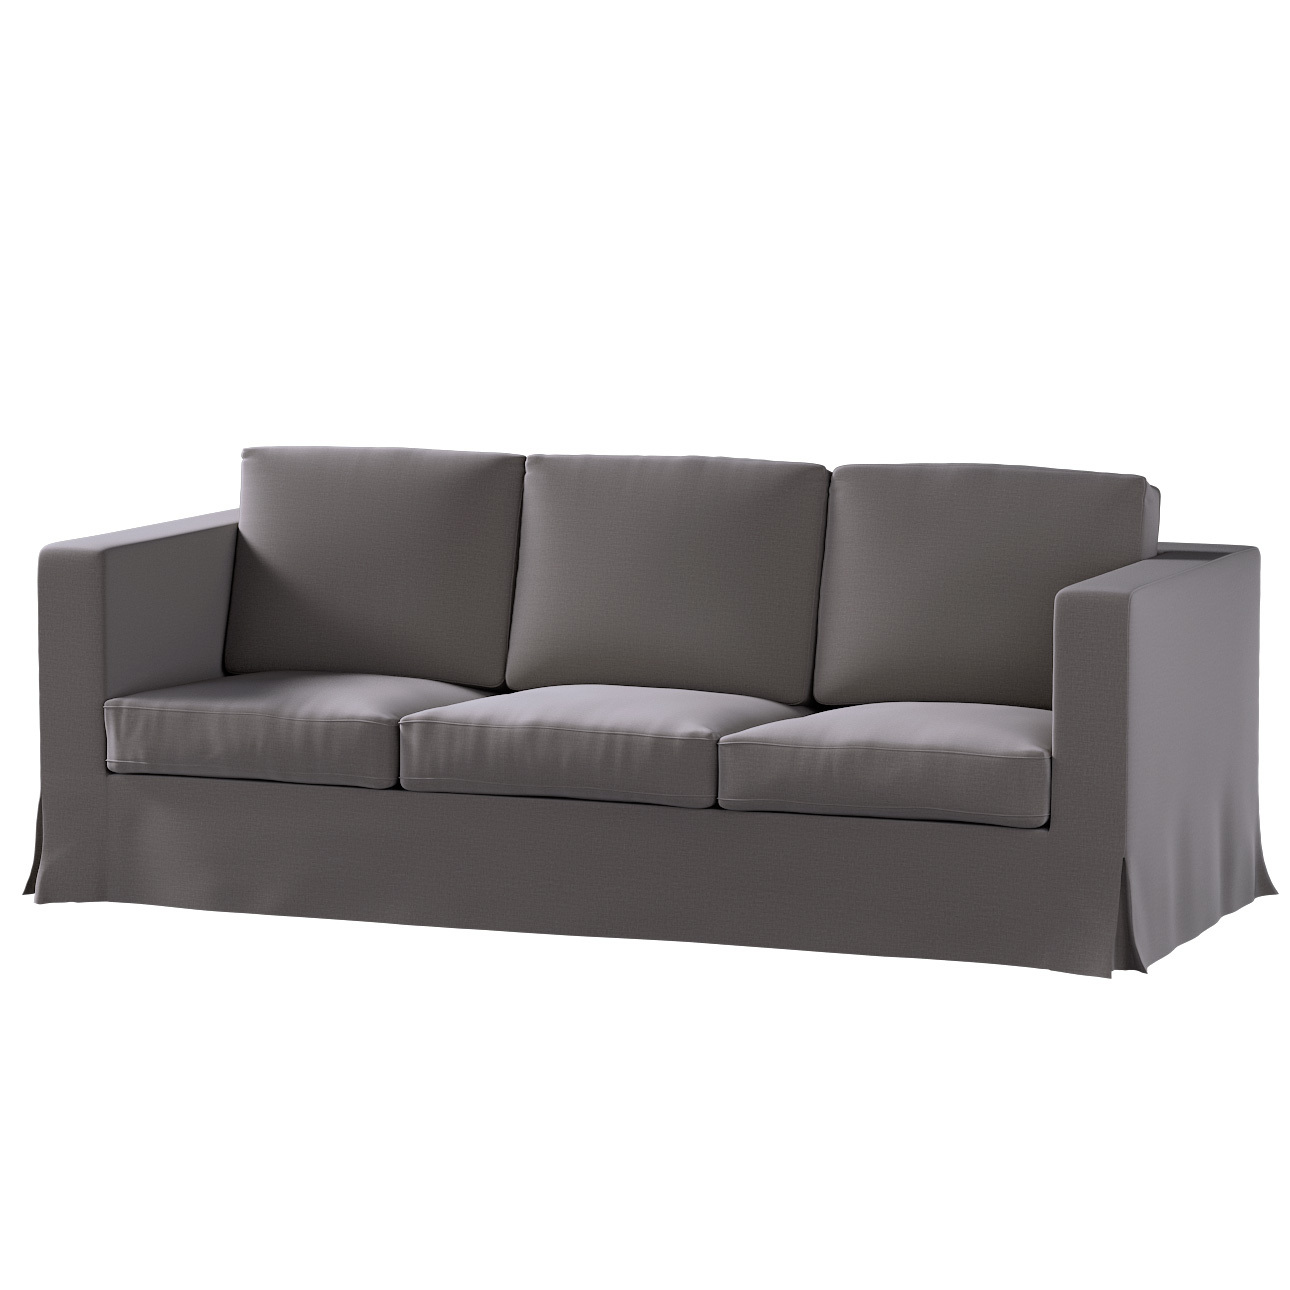 Bezug für Karlanda 3-Sitzer Sofa nicht ausklappbar, lang, braun, Bezug für günstig online kaufen